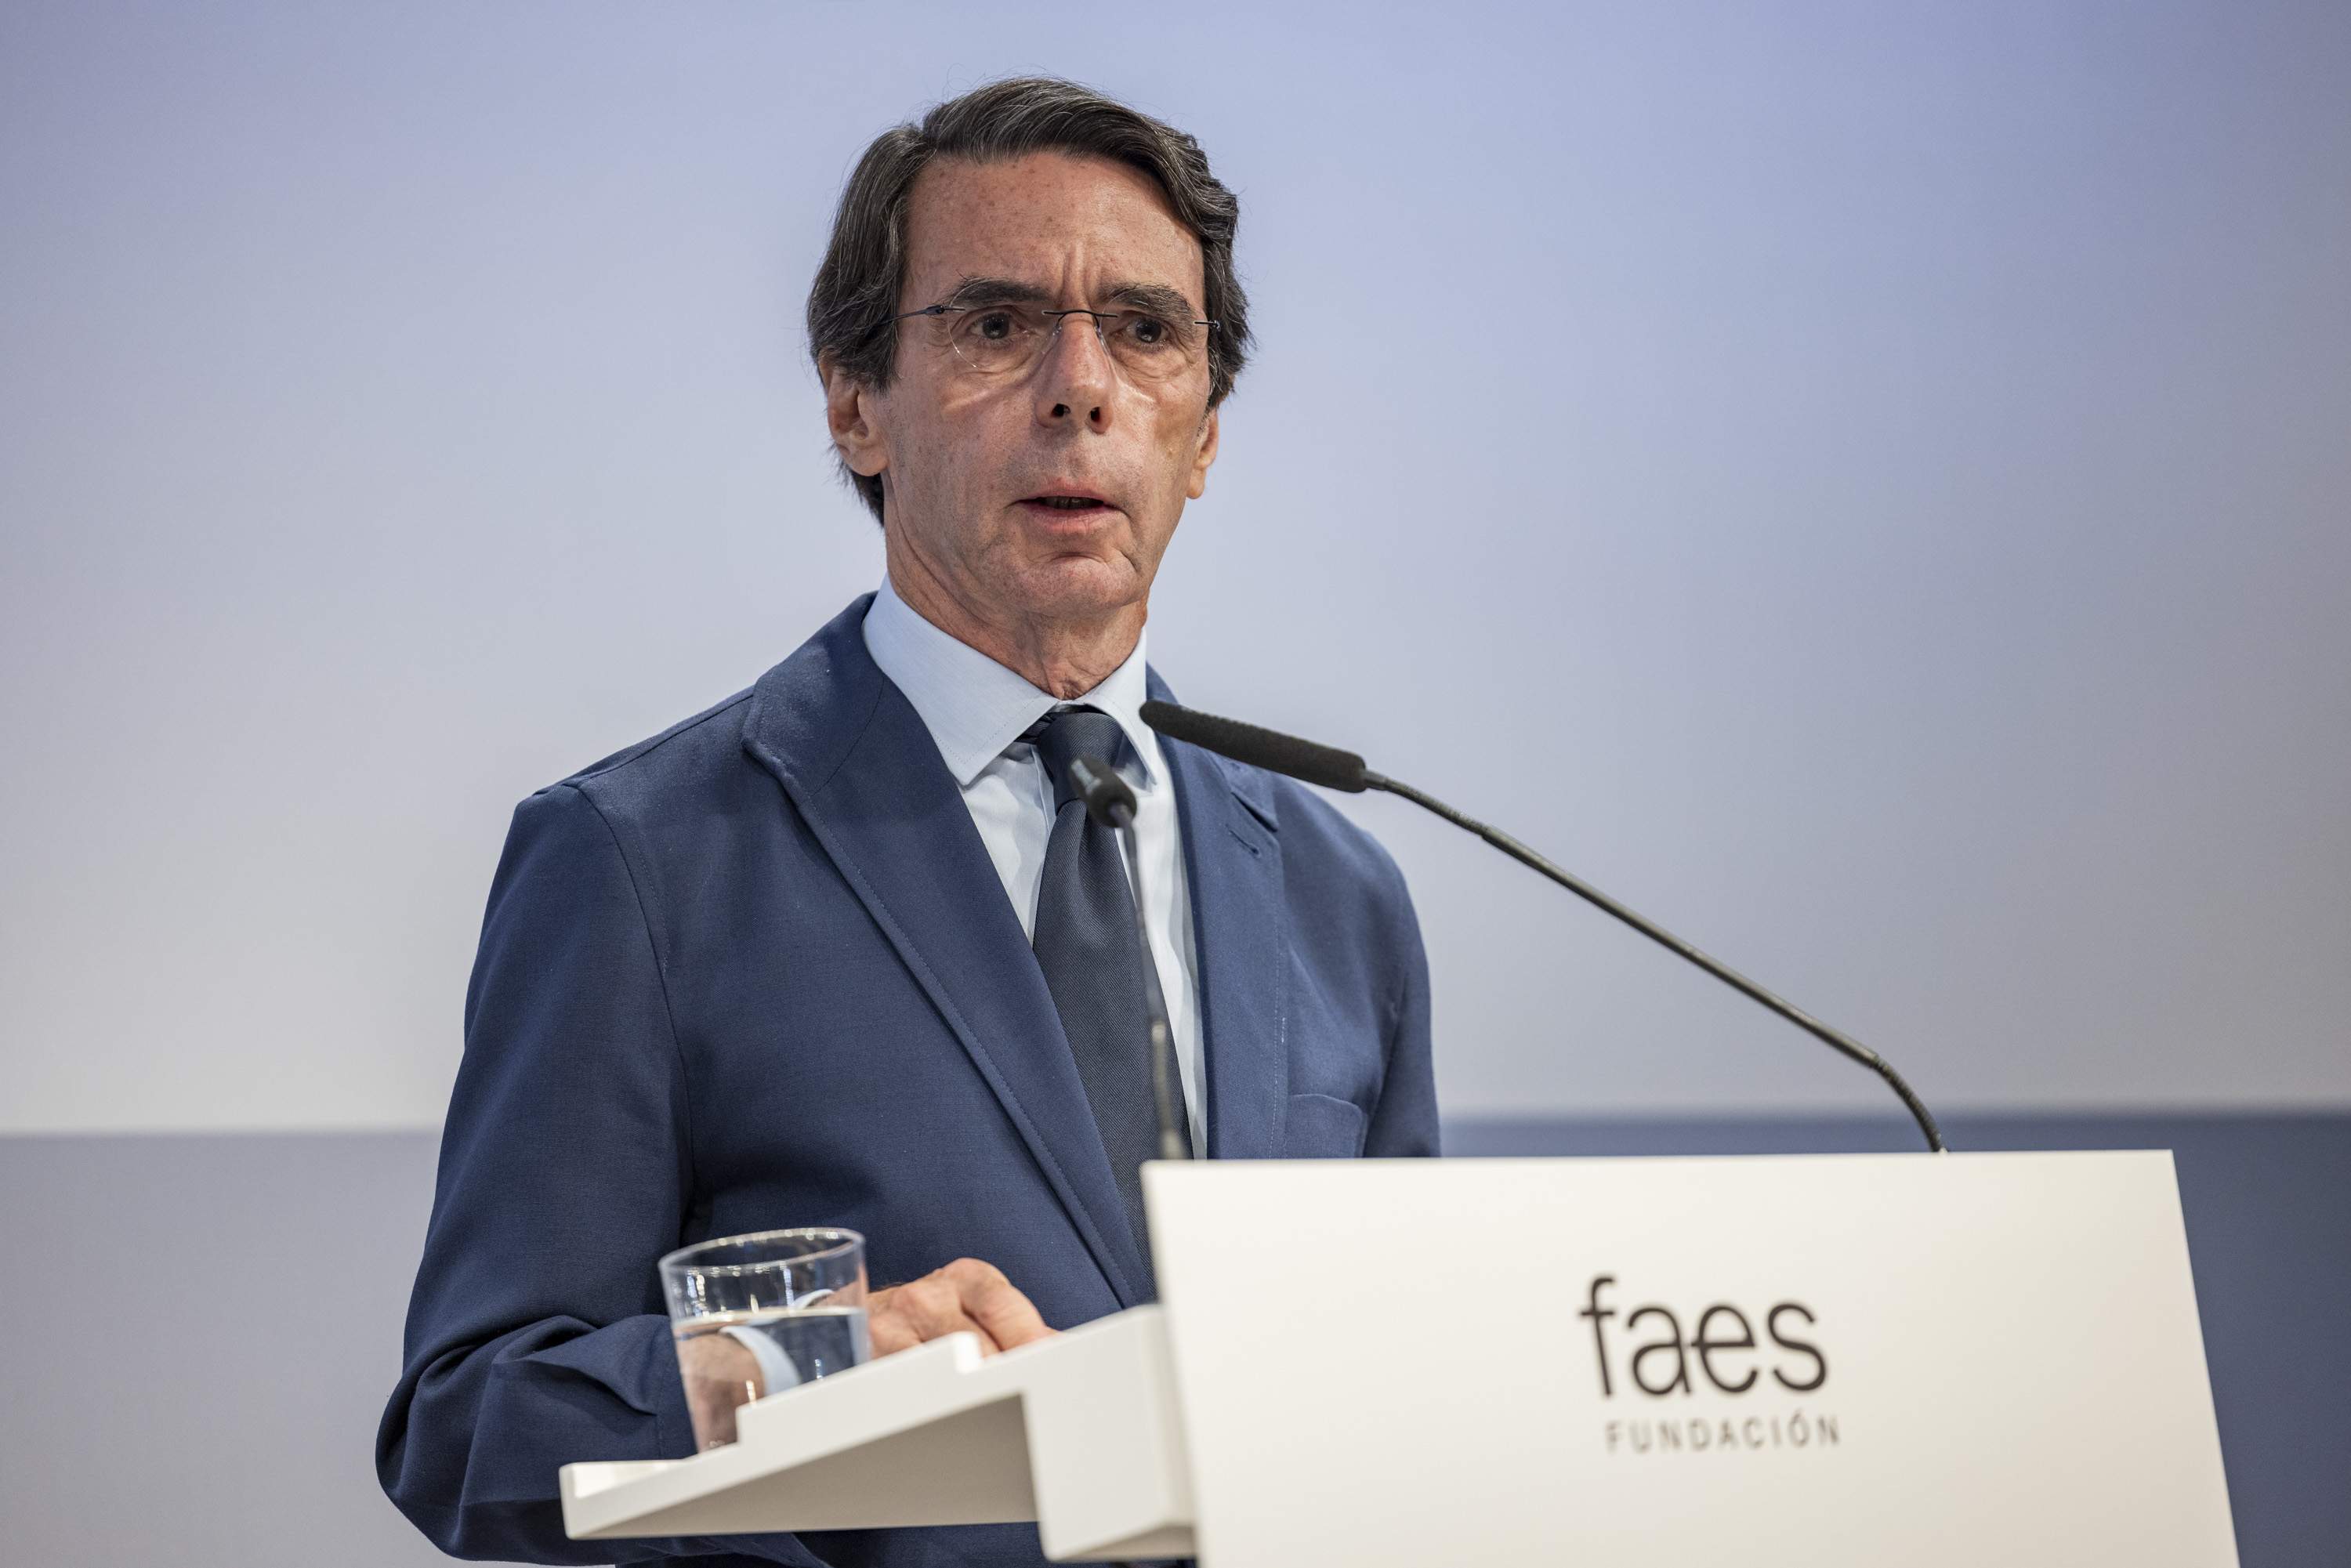 Aznar defiende en Barcelona el Pacto del Majestic con CiU: "No fue un chantaje ni una carta feudal"